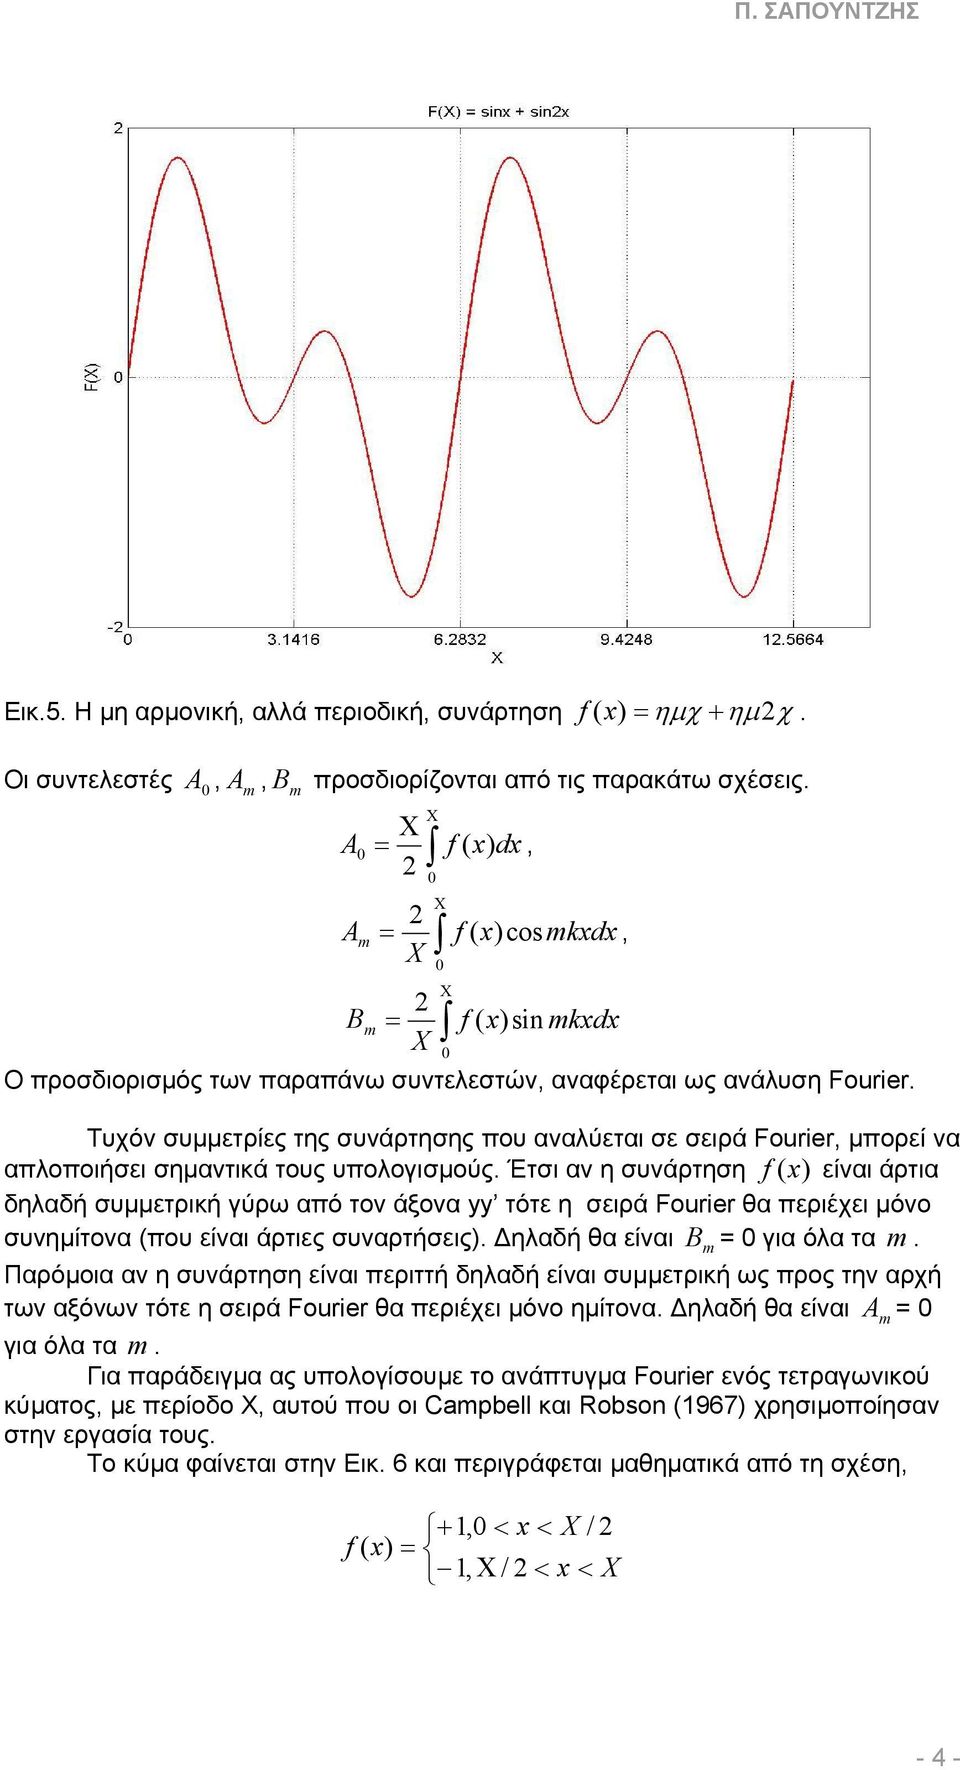 Τυχόν συµµετρίες της συνάρτησης που αναλύεται σε σειρά Fourier, µπορεί να απλοποιήσει σηµαντικά τους υπολογισµούς.